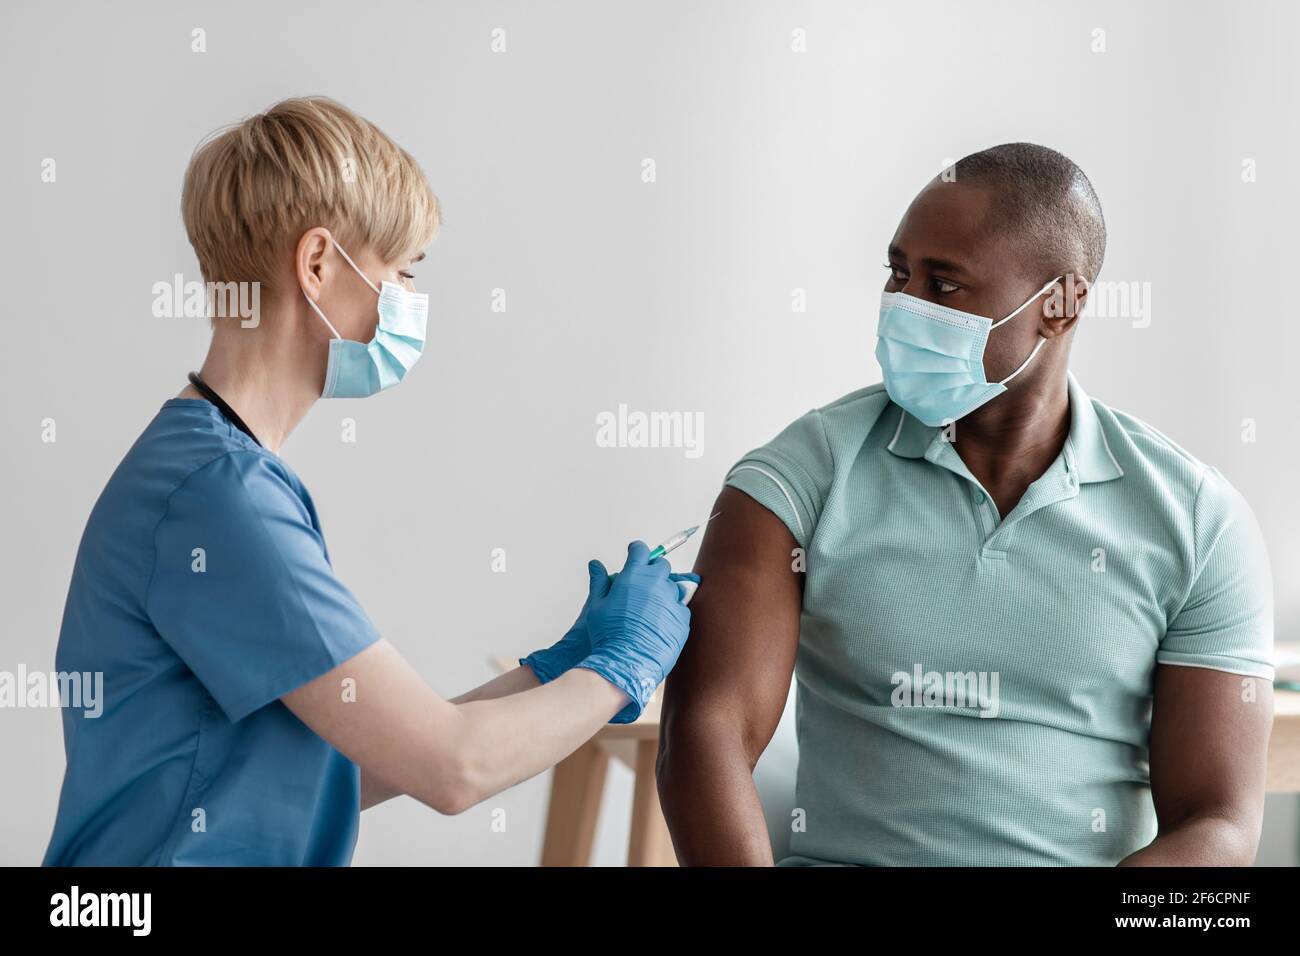 Vacunación, inmunización, prevención de enfermedades, hombre en máscara médica que recibe Covid-19 o vacuna contra la gripe Foto de stock